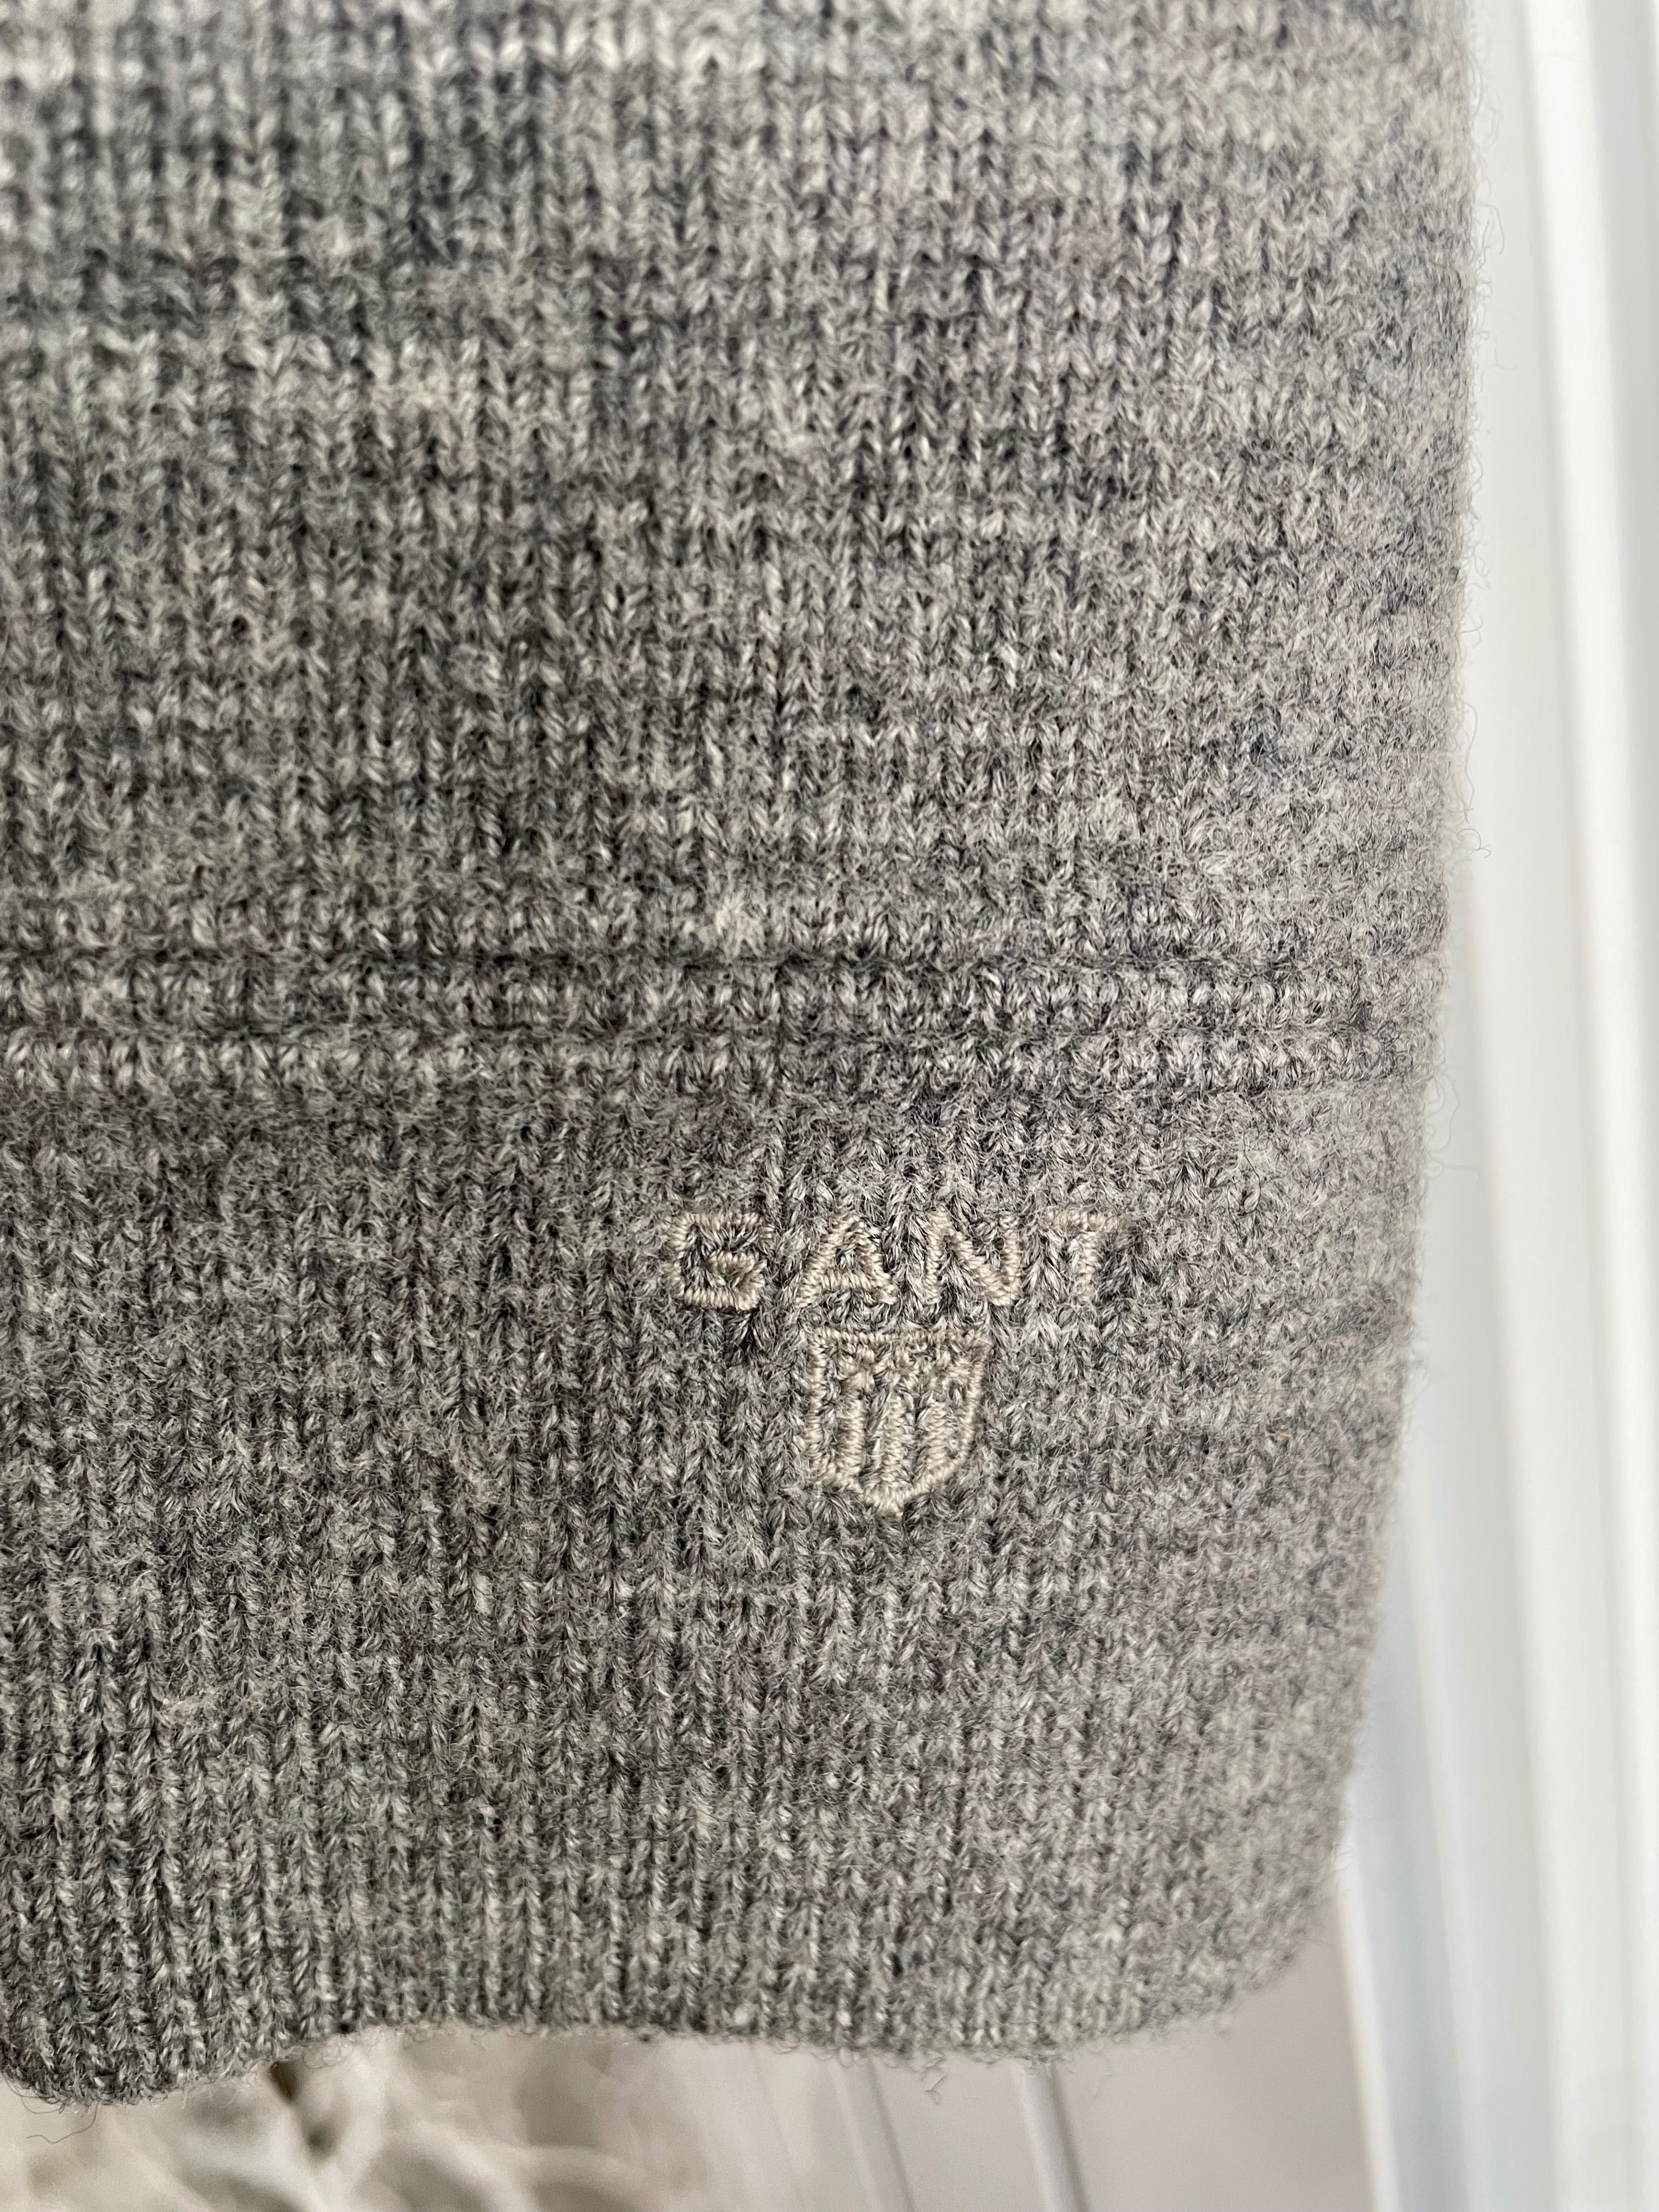 Gant, wool 100%, knit blaser cardigan